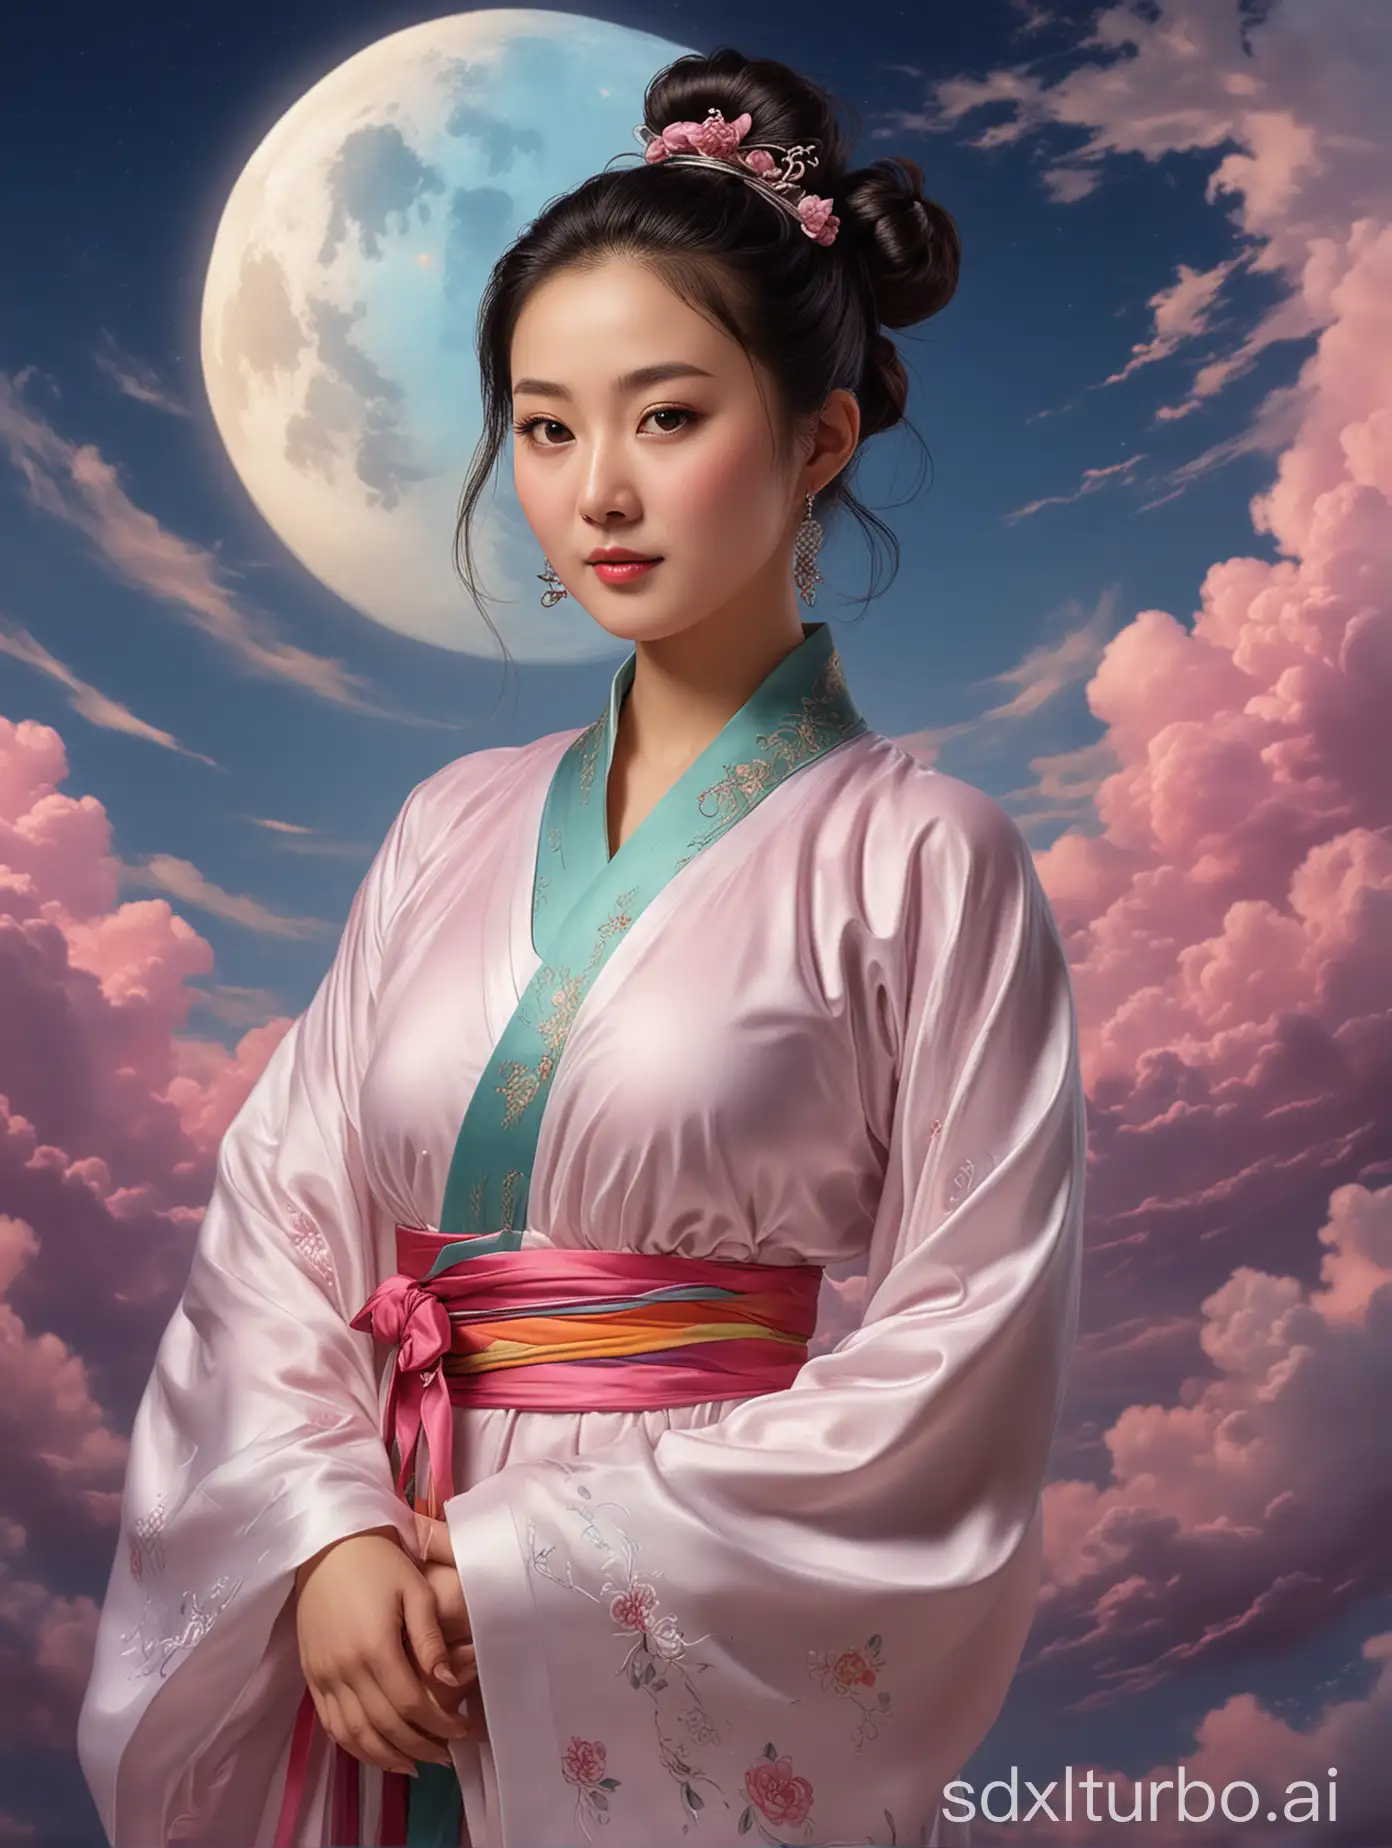 
32岁中国美女，身材凹凸有致，五官清秀冷艳，敦煌飞天造型，宫髻，彩带，赤足，皎洁的月亮，彩云